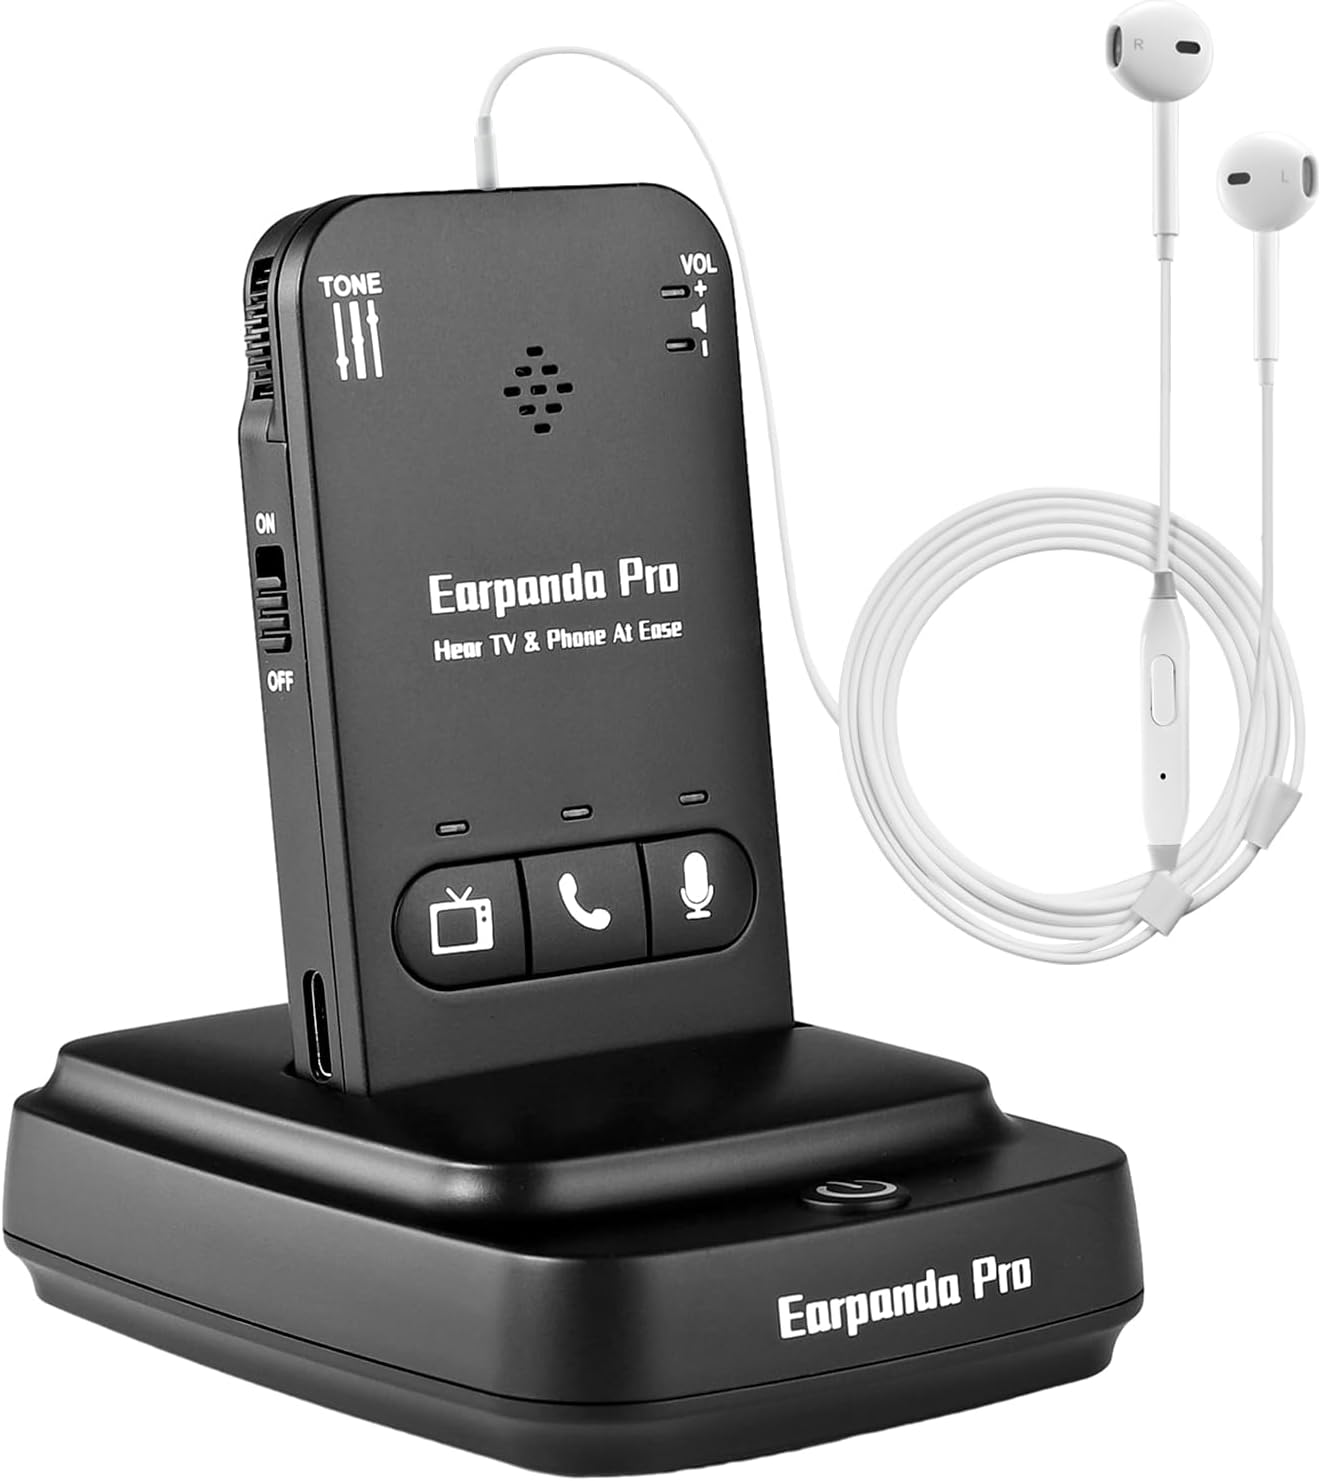 earpanda Pro Wireless Headphones for TV Watching, TV Headphones